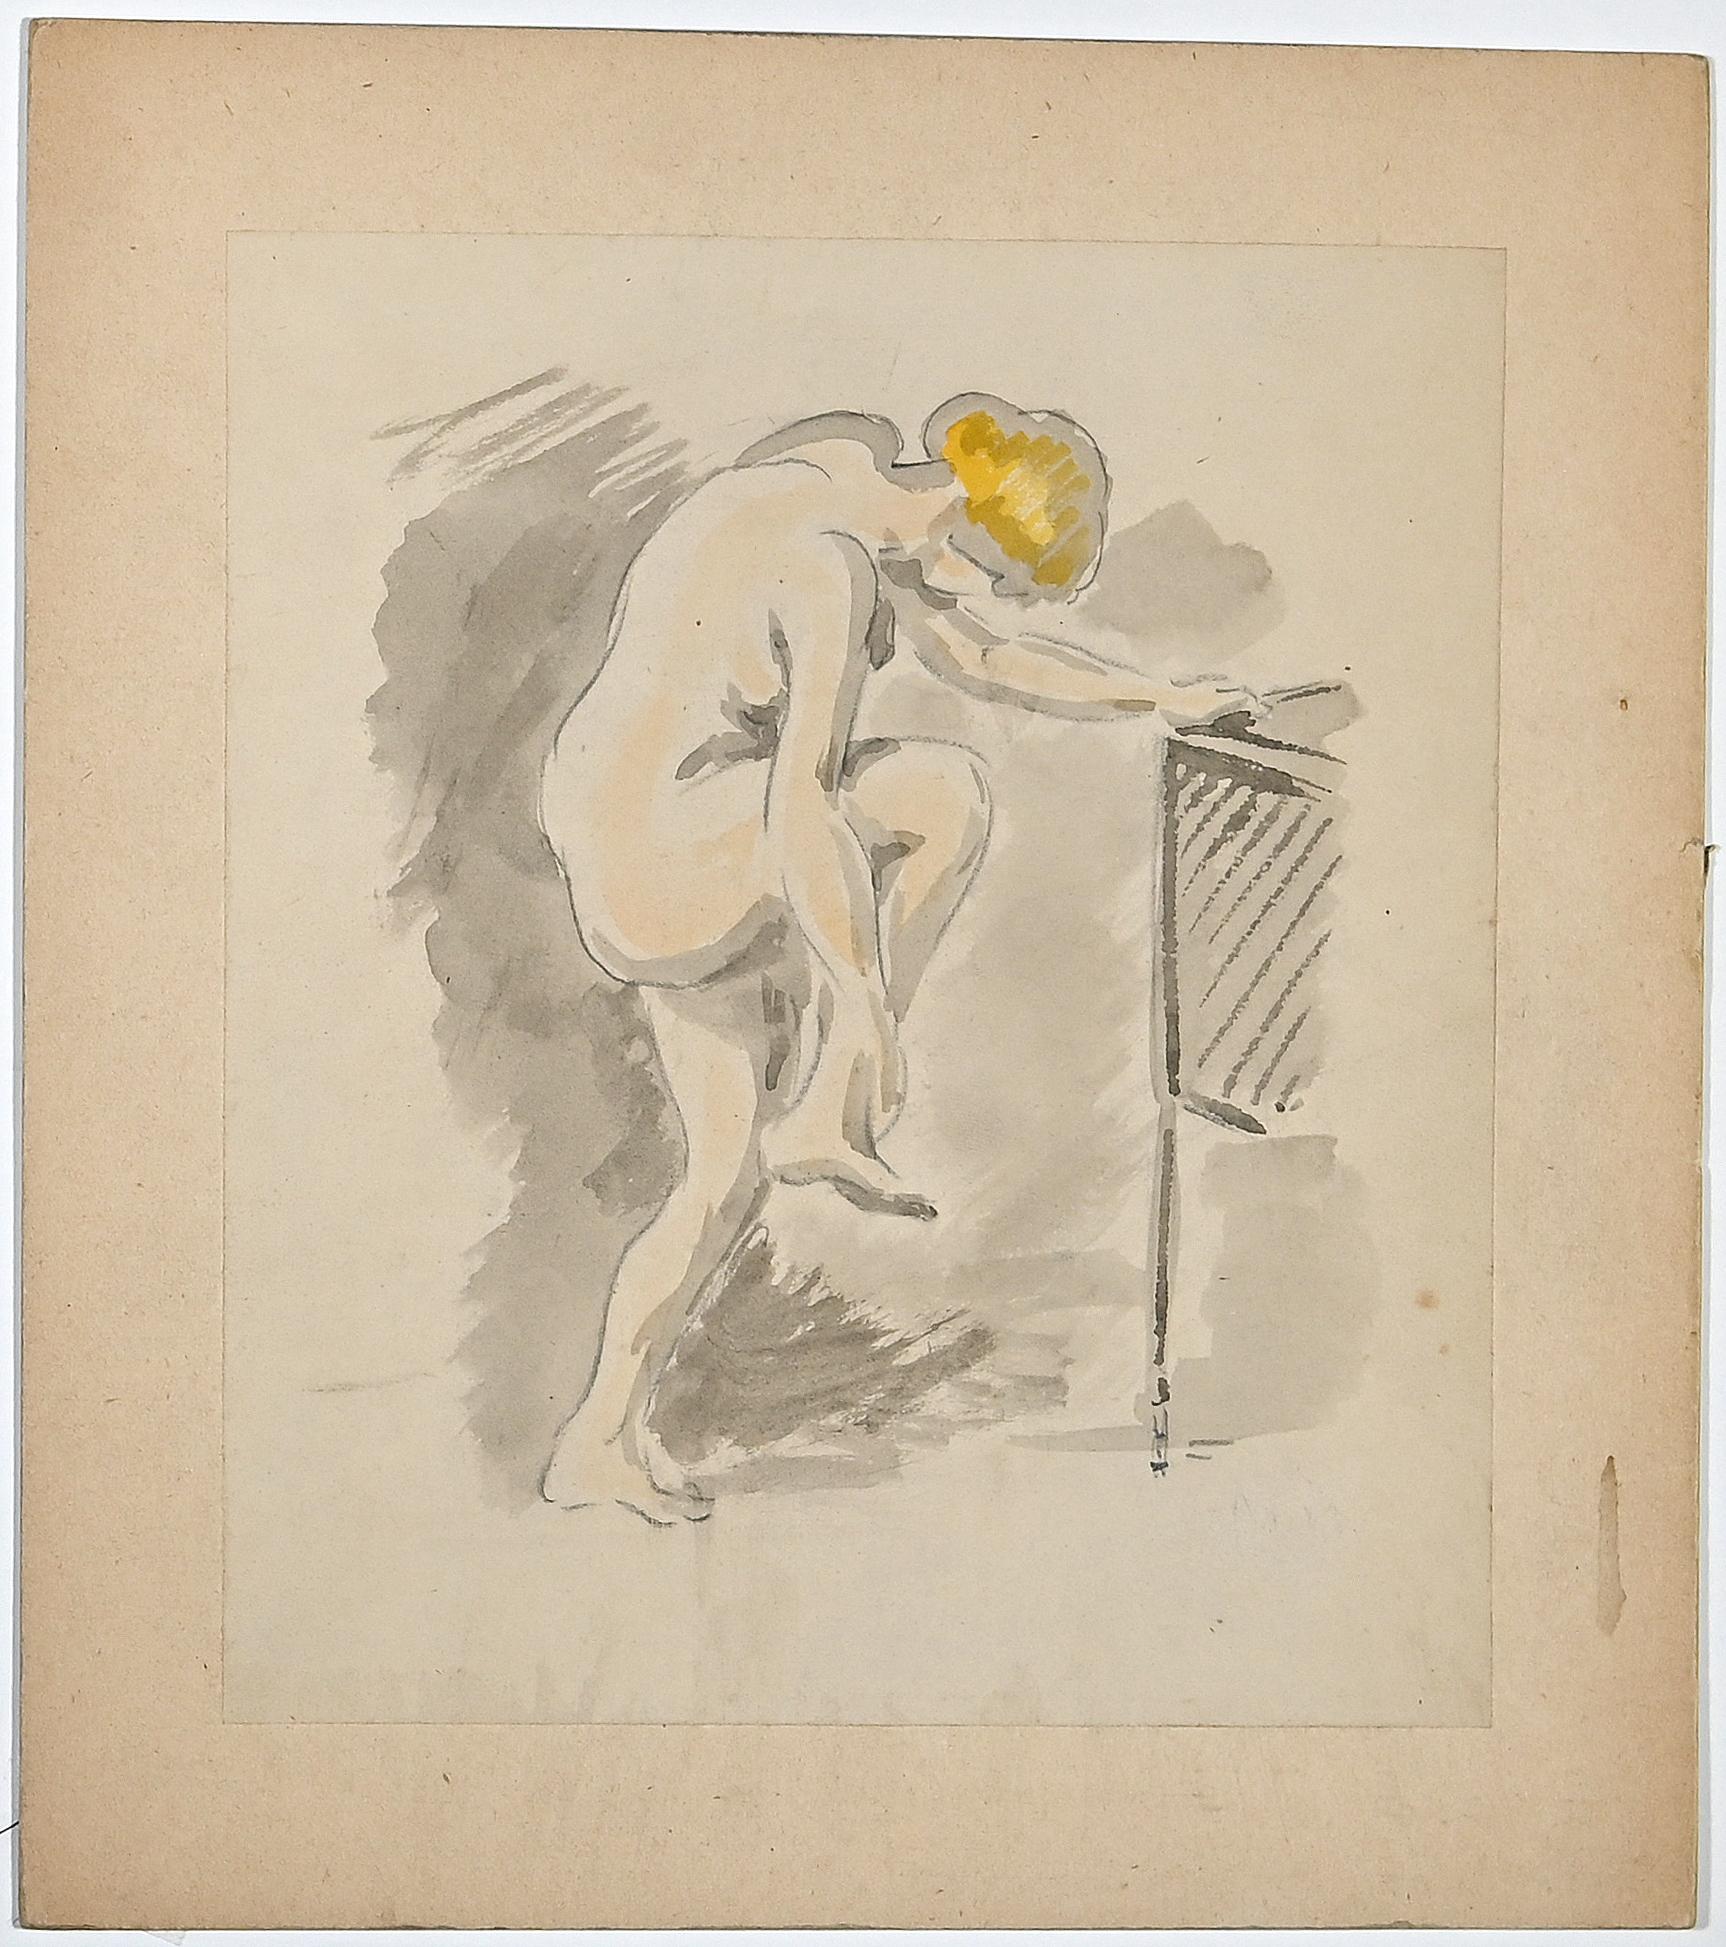 Akt einer Frau ist eine Tusche- und Aquarellzeichnung von Gaspard Maillol (1880-1946).

Guter Zustand auf vergilbtem Karton, mit weißem Passepartout aus Karton (51x35 cm).

Keine Unterschrift.

Gaspard Maillol, geboren am 10. Juli 1880 in Barcelona